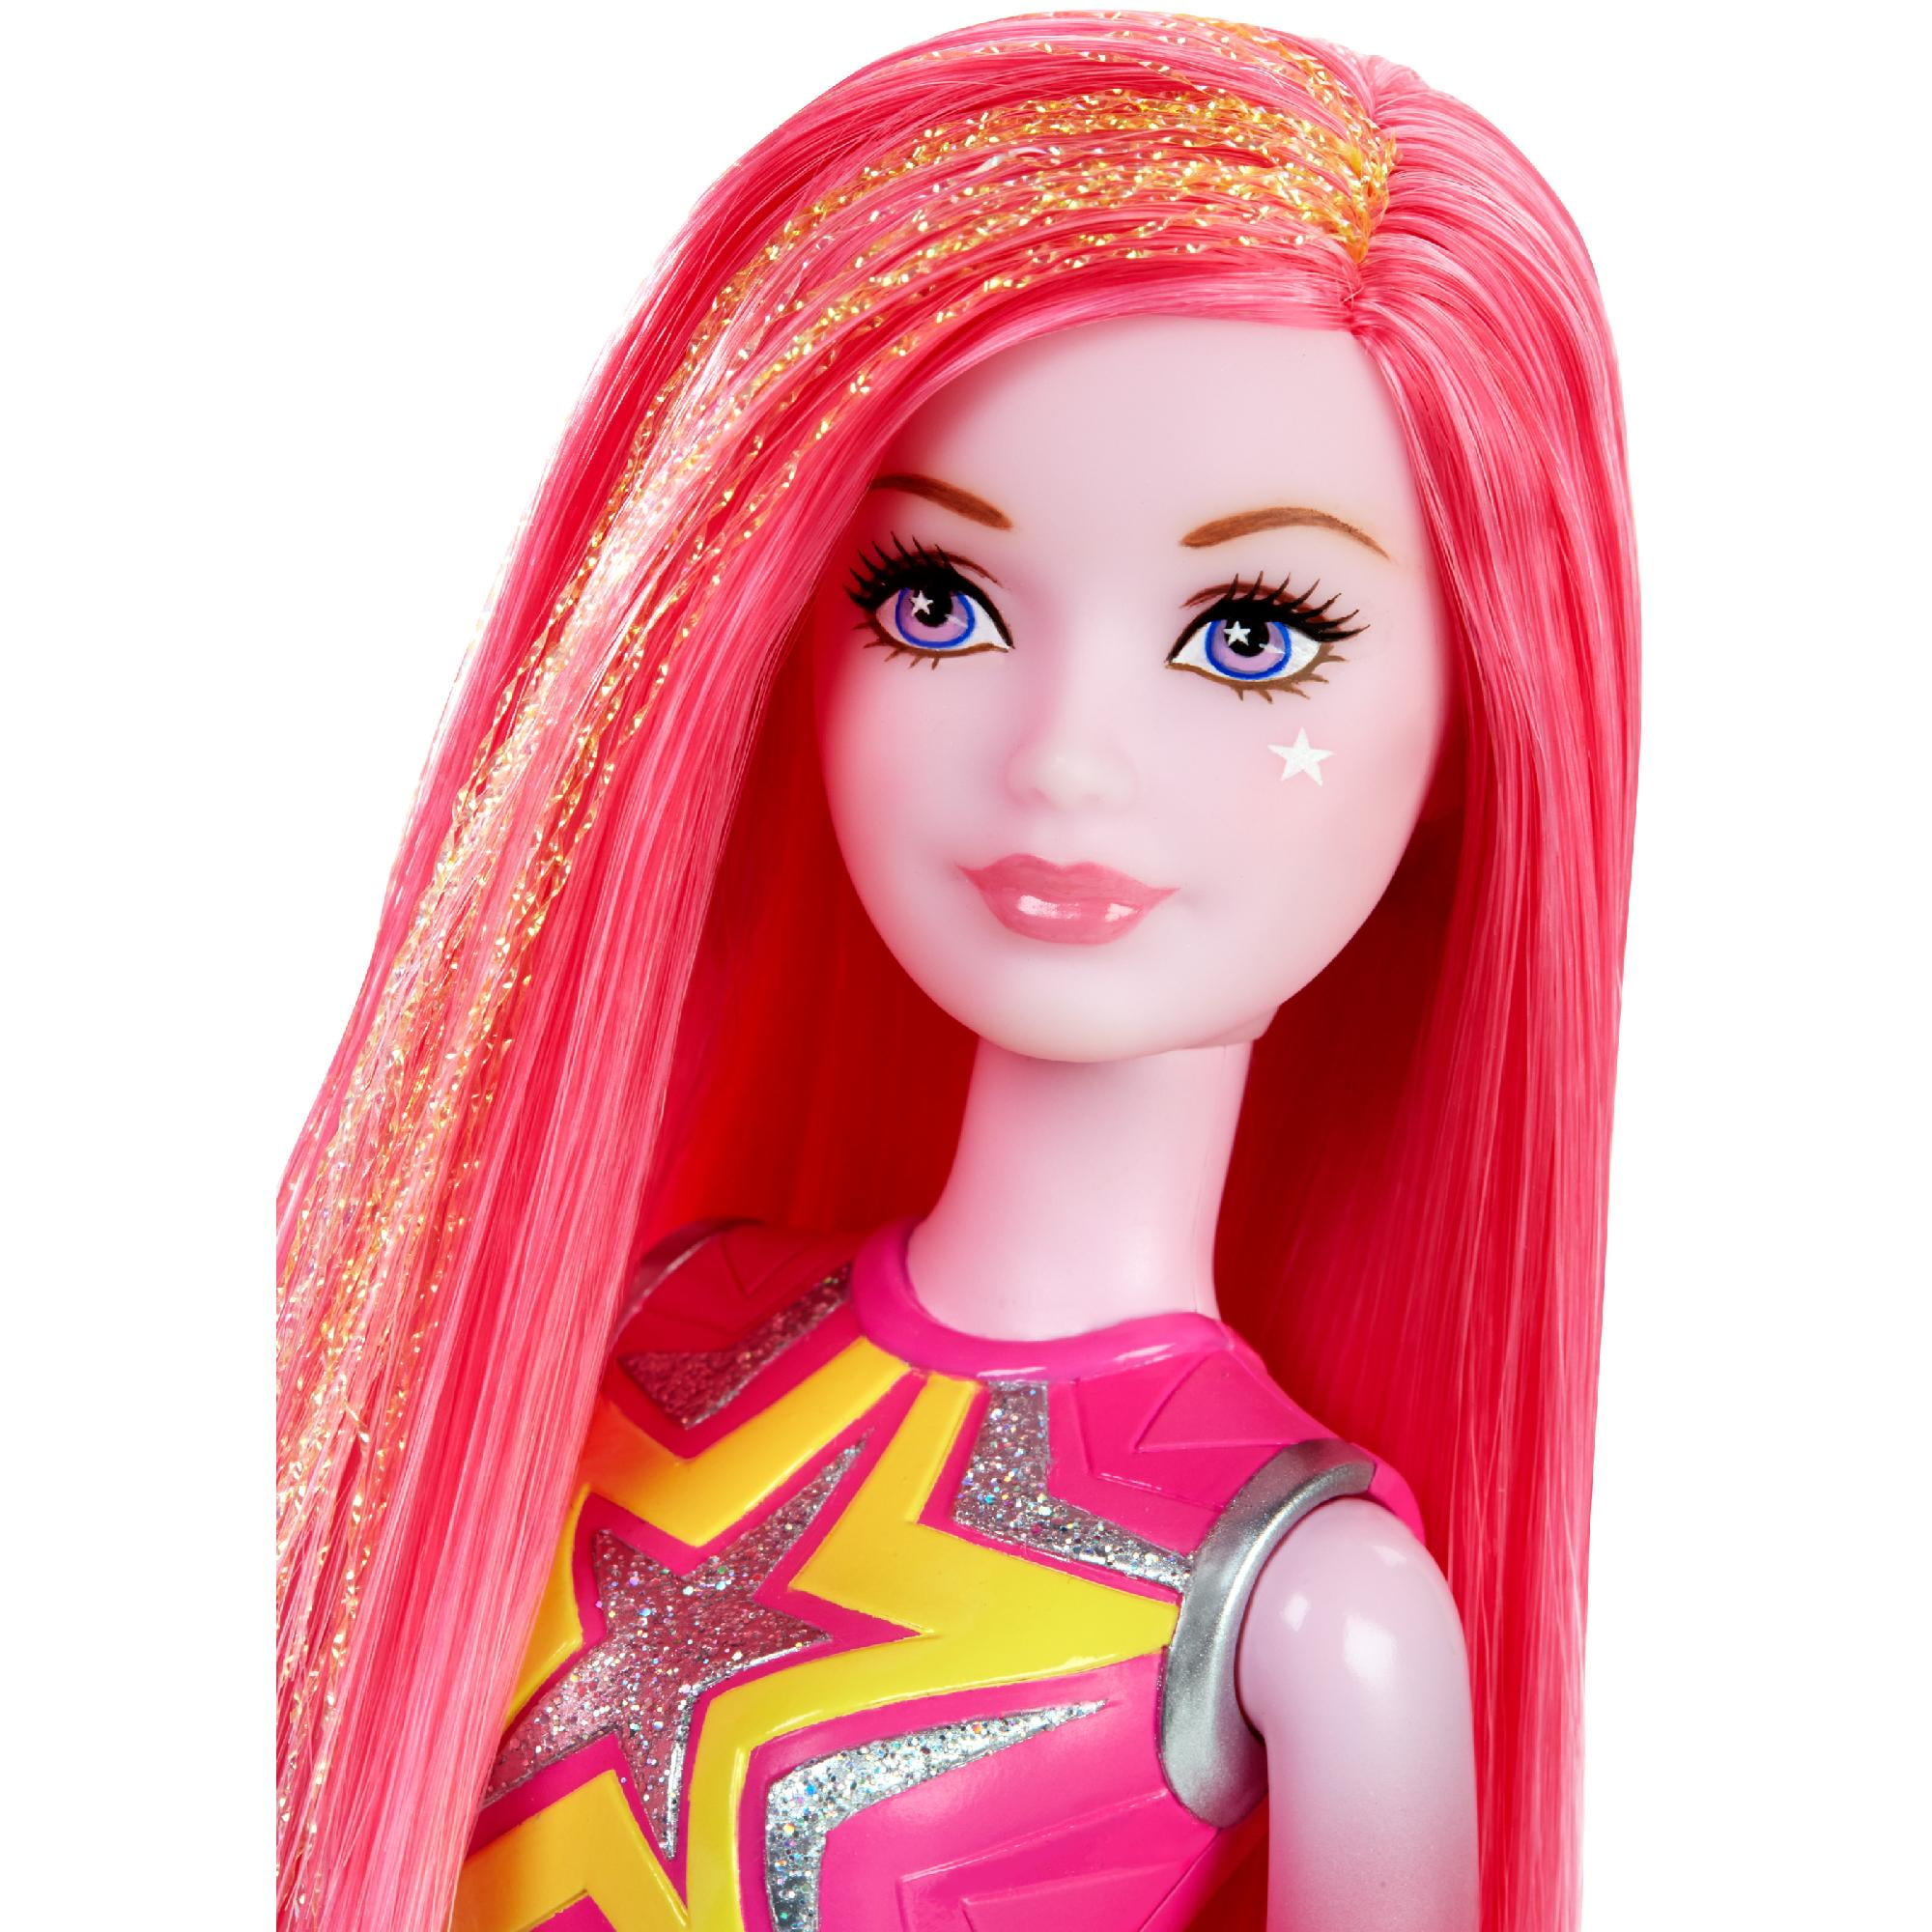 Барби с розовыми волосами. Барби космическое приключение розовая кукла. Кукла Barbie и космическое приключение, 29 см, dlt40. Barbie Starlight Adventure куклы. Кукла с розовыми волосами.